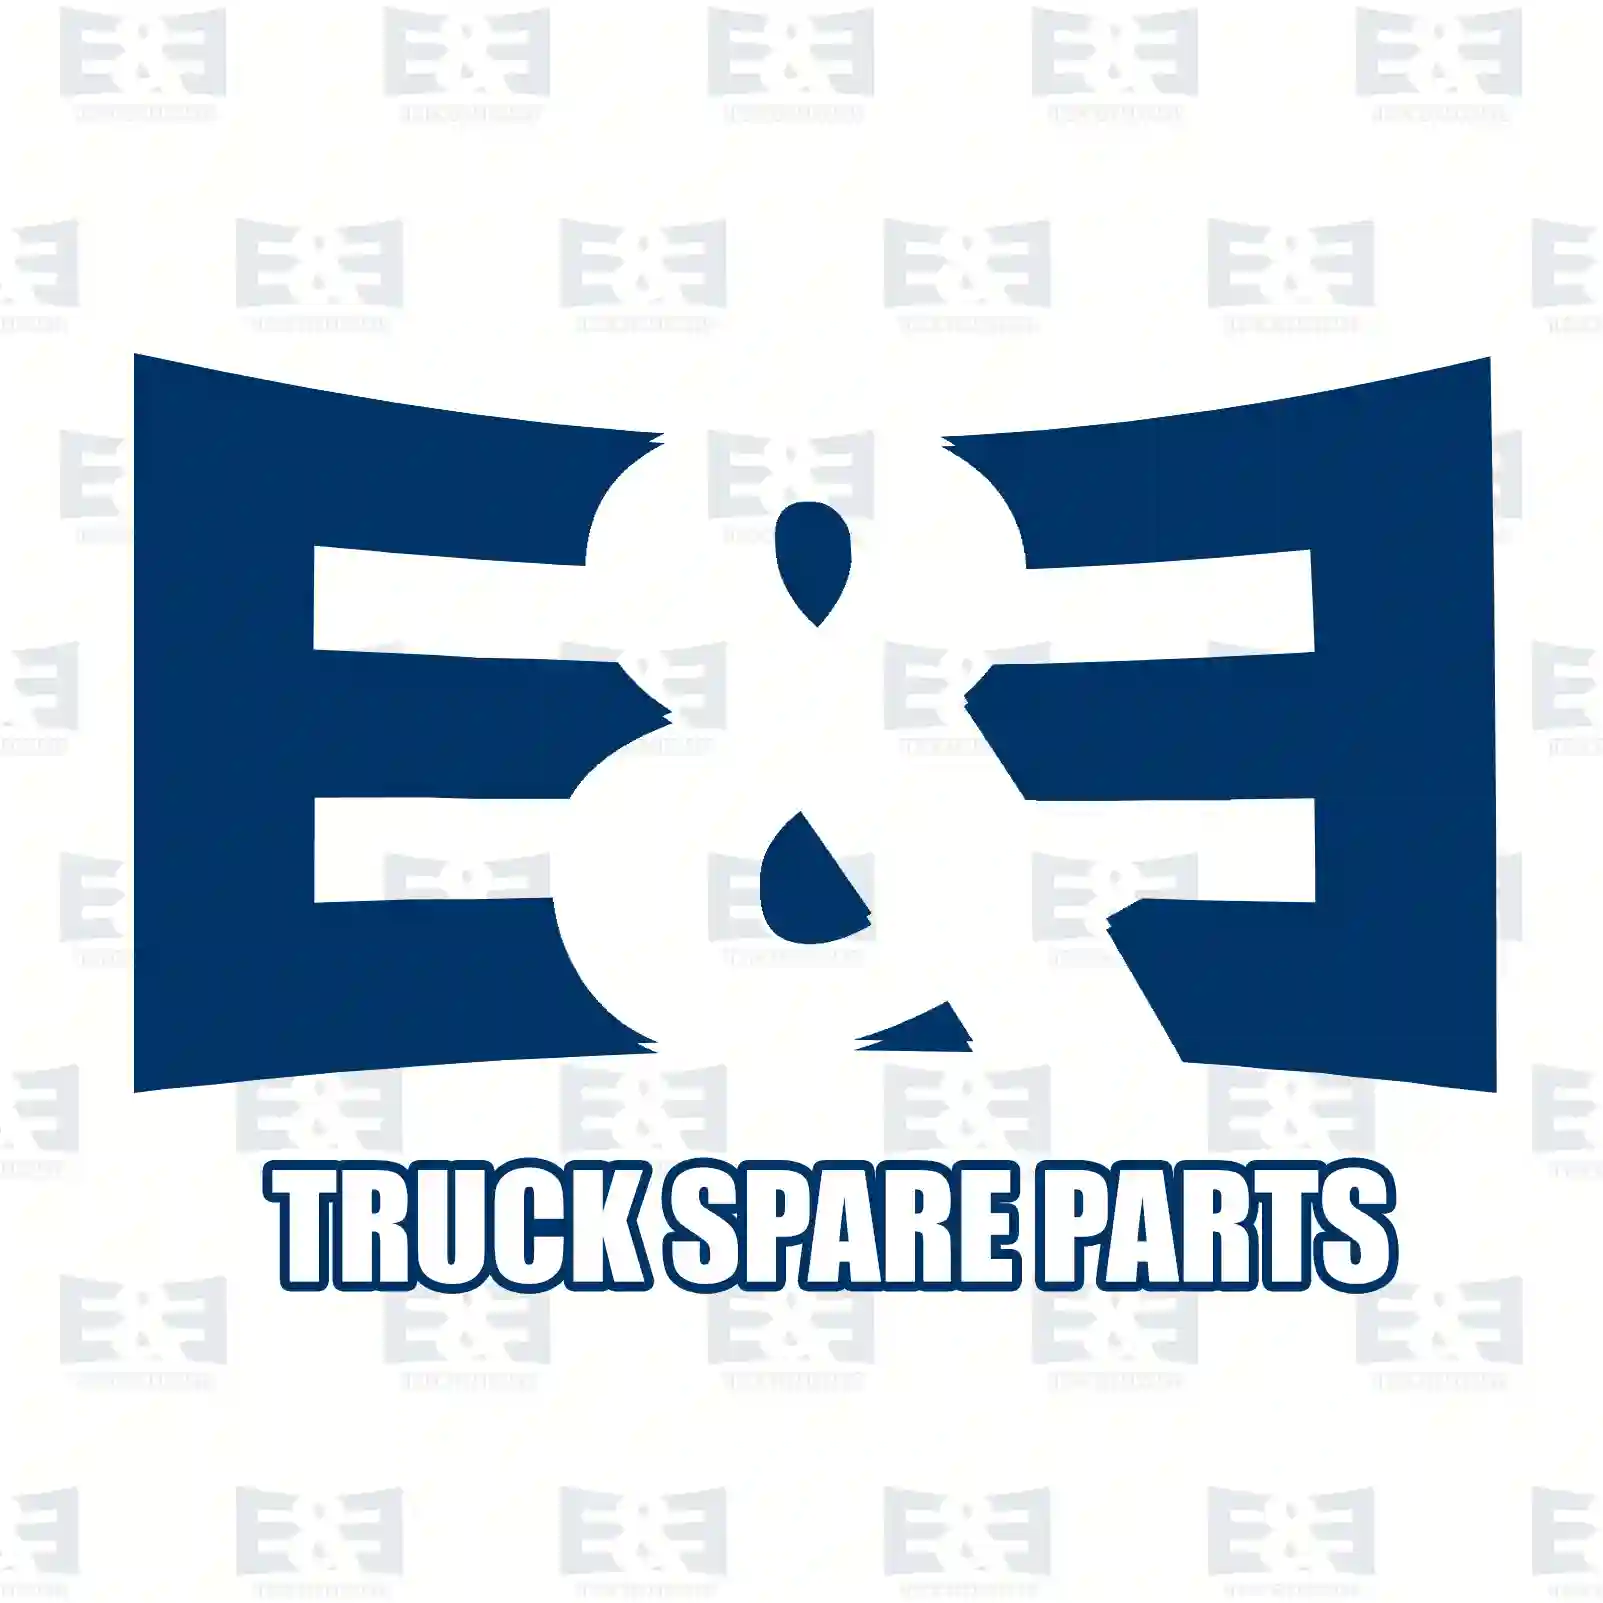 Fuel filter, complete, 2E2206821, 51125030053S1, 7421023287S, 7421900852S, 7485116634S1, 20509138S, 20733422S, 20783917S, 20784692S, 20873675S, 20976003S4, 21023287S, 21900852S ||  2E2206821 E&E Truck Spare Parts | Truck Spare Parts, Auotomotive Spare Parts Fuel filter, complete, 2E2206821, 51125030053S1, 7421023287S, 7421900852S, 7485116634S1, 20509138S, 20733422S, 20783917S, 20784692S, 20873675S, 20976003S4, 21023287S, 21900852S ||  2E2206821 E&E Truck Spare Parts | Truck Spare Parts, Auotomotive Spare Parts